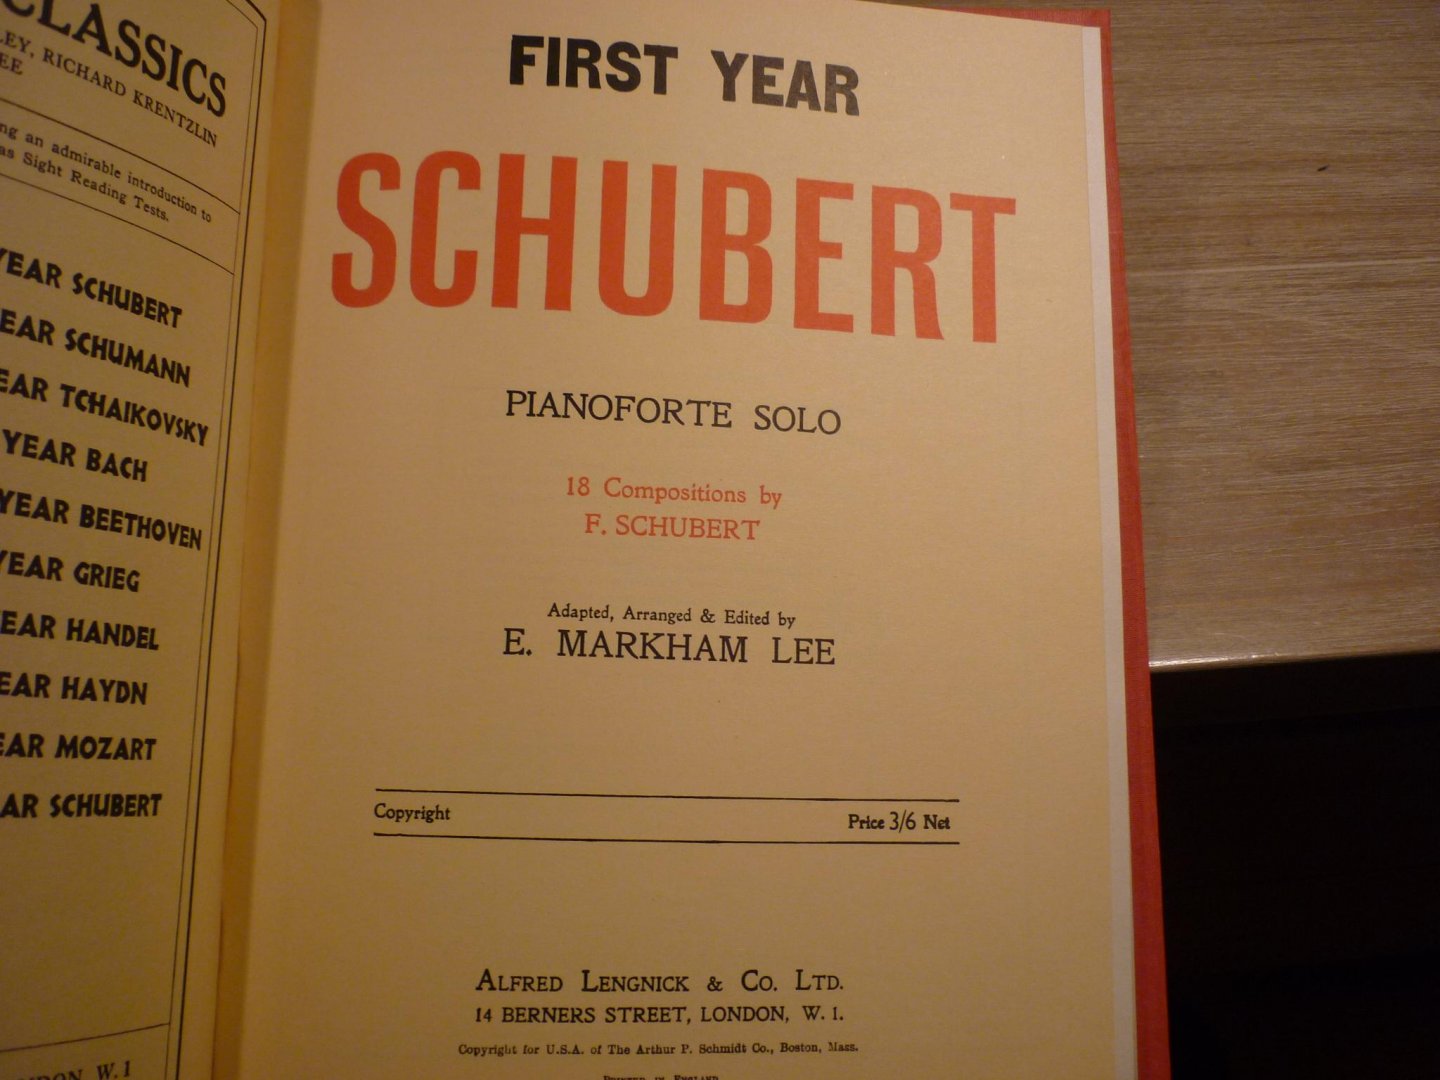 Beethoven / Schubert / Schumann; Mendelssohn - First Year Beethoven  //  Second Year Beethoven  //  First Year Schubert  // Second Year Schubert  //   First Year Mendelssohn  // First Year Shumann